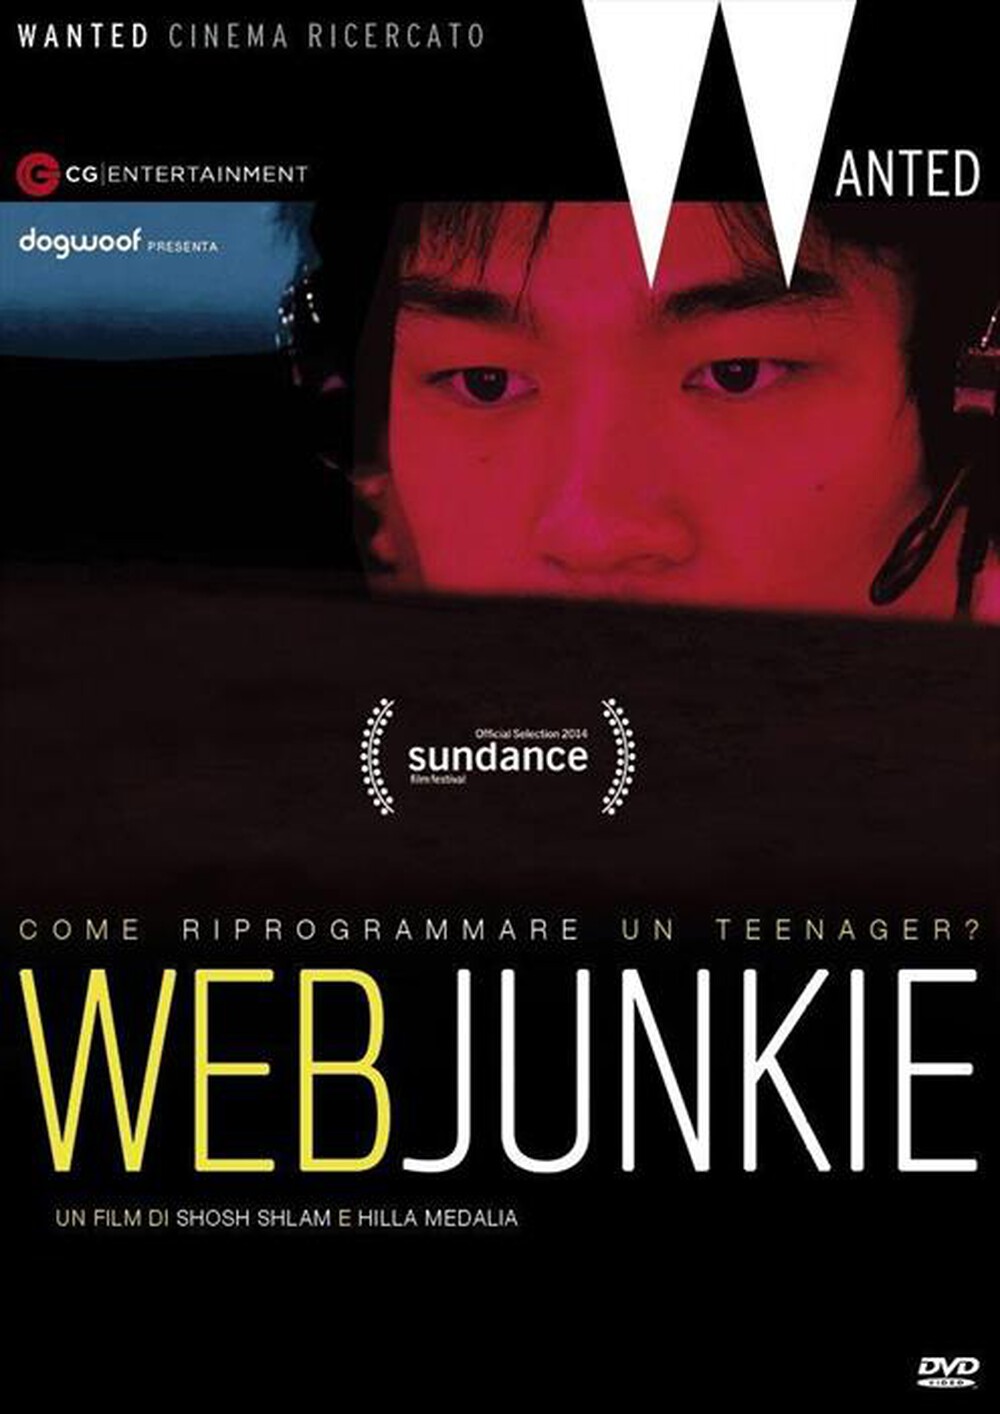 "CECCHI GORI - Web Junkie"